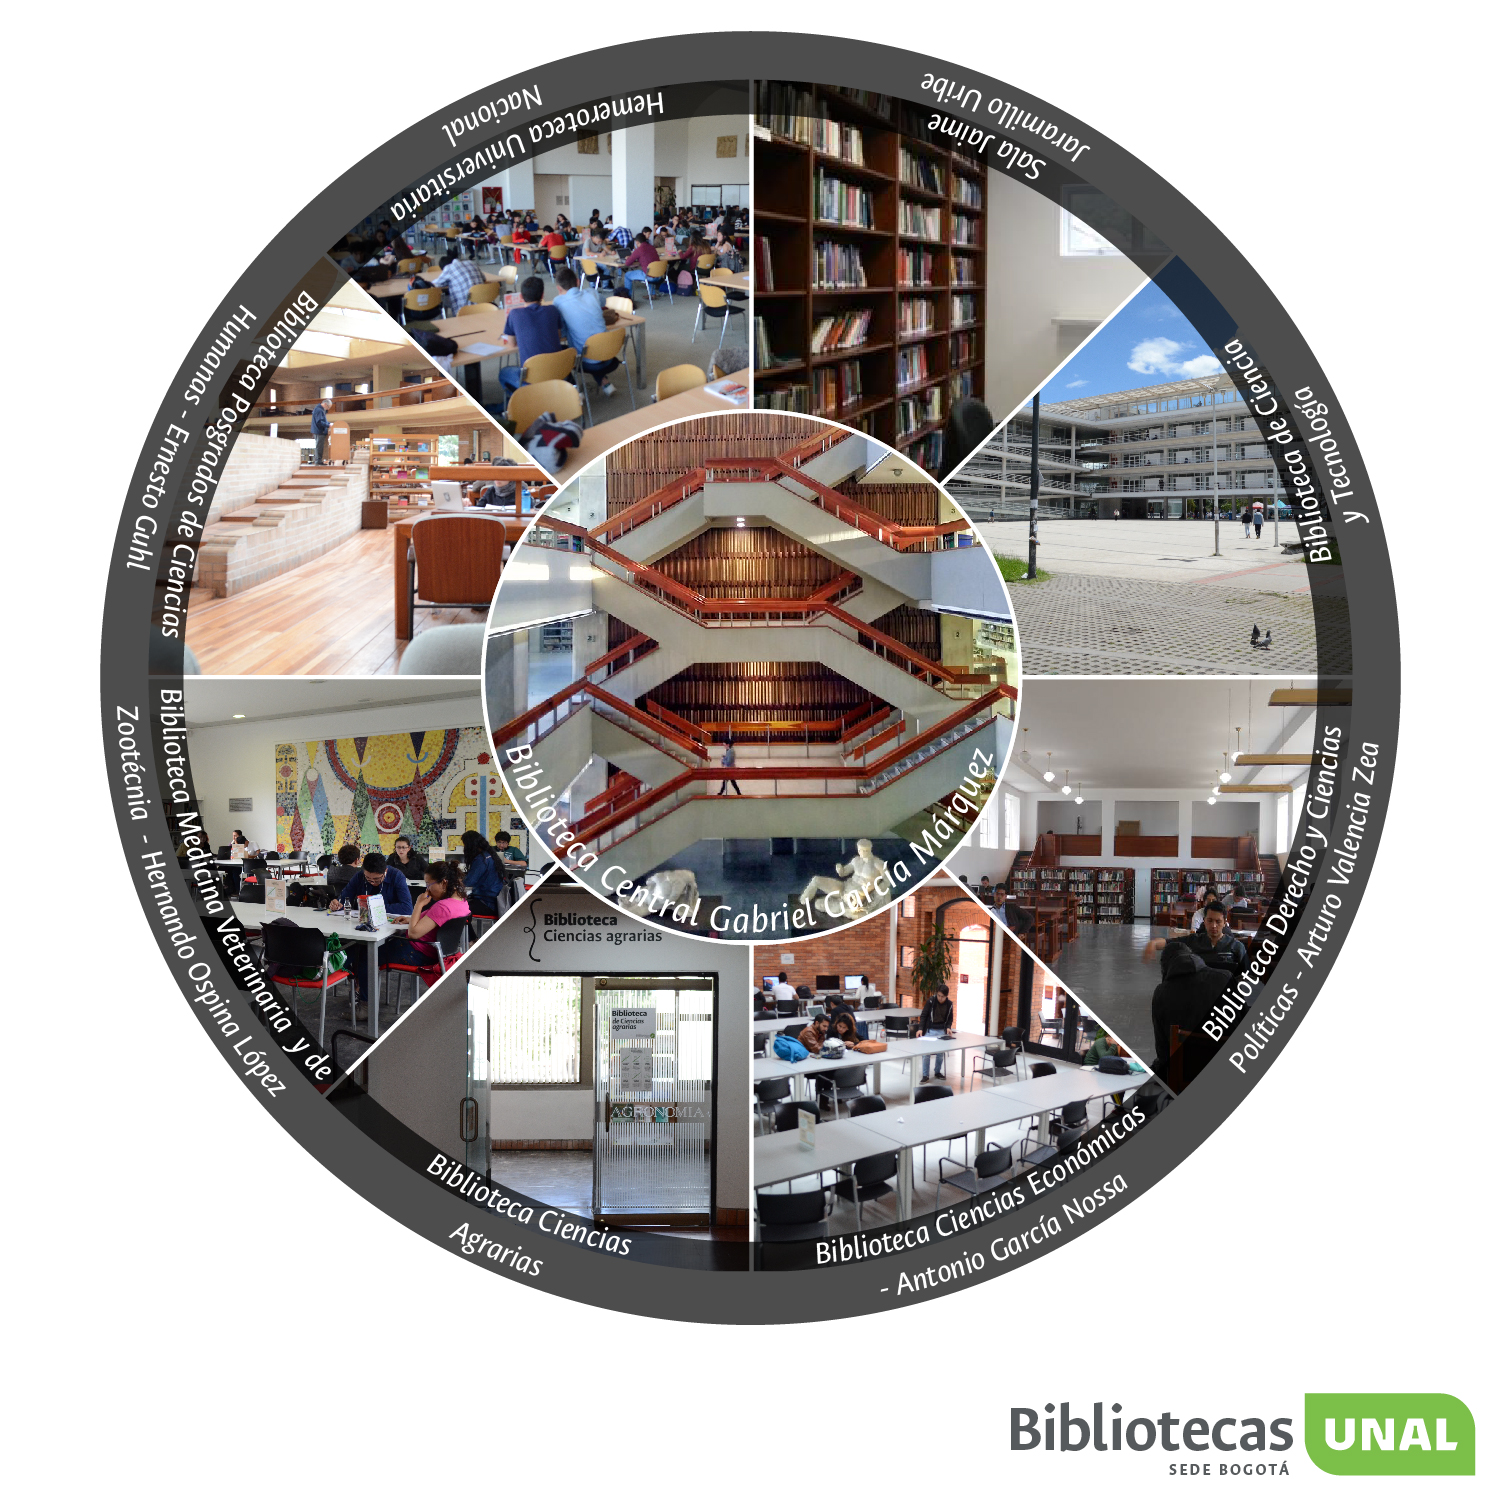 Bibliotecas en la sede Bogotá de la Universidad Nacional de Colombia - imagen y enlace